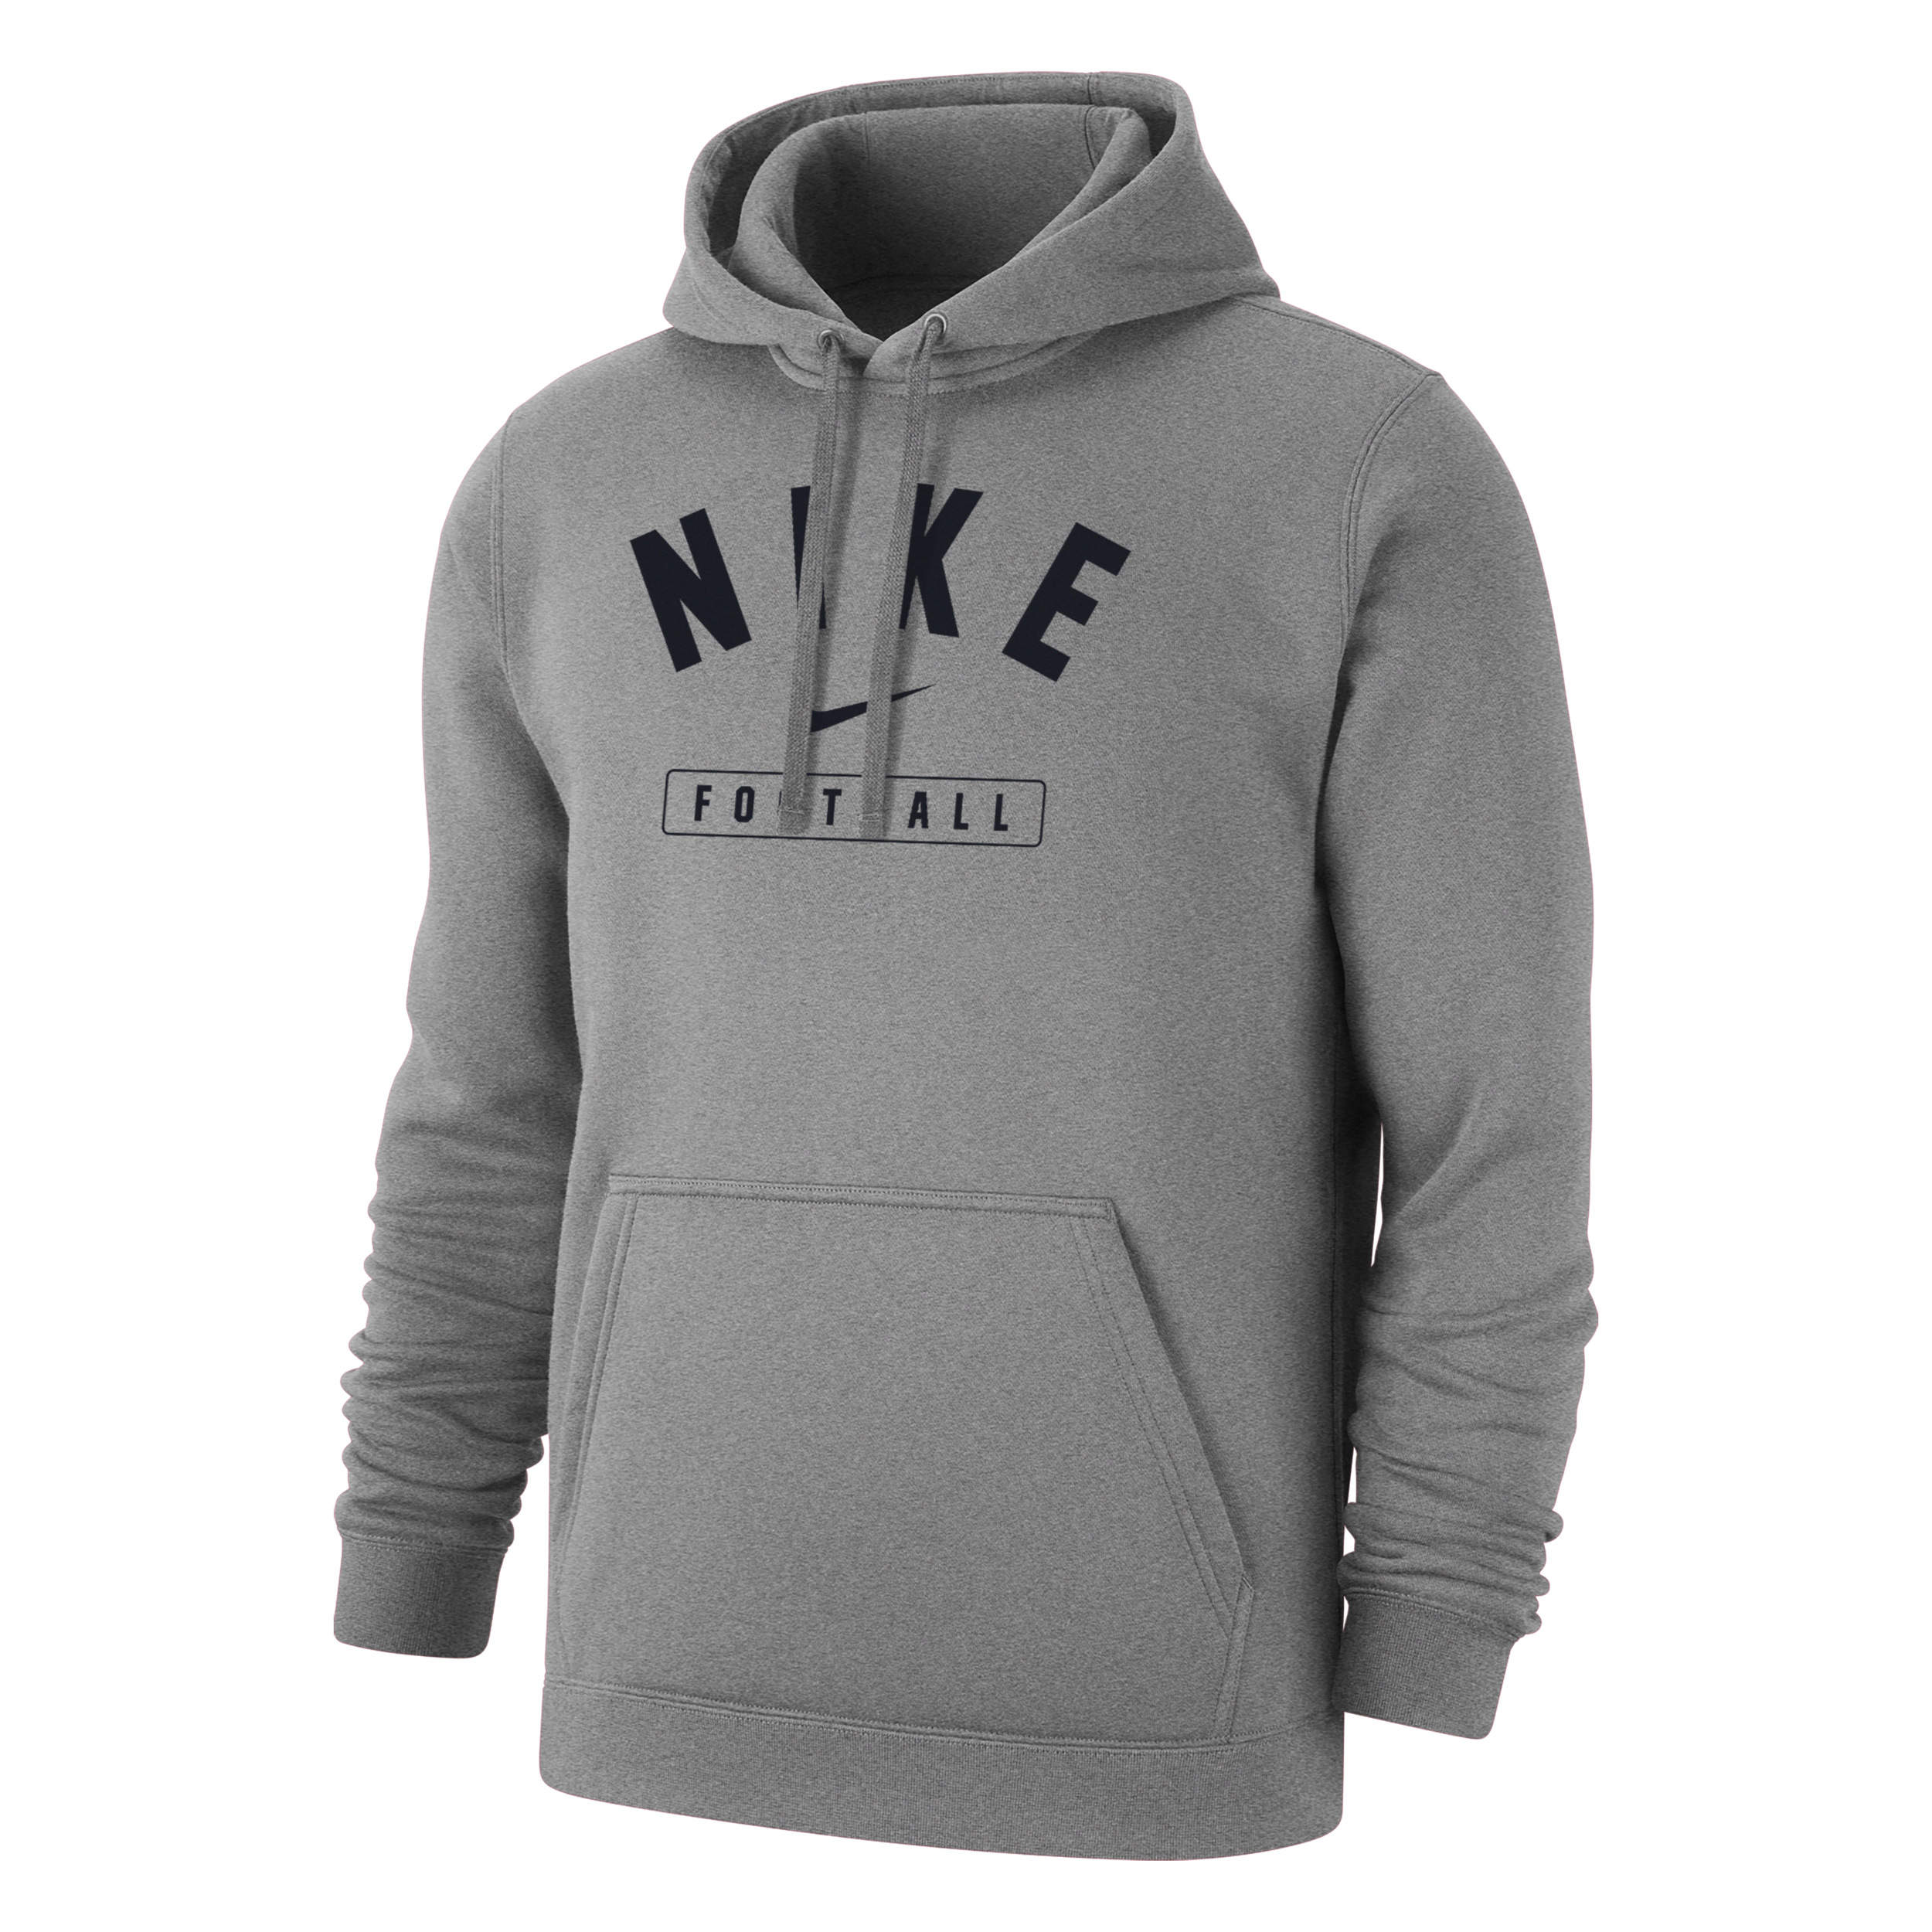 Nike Men's Football Pullover Hoodie In Grey